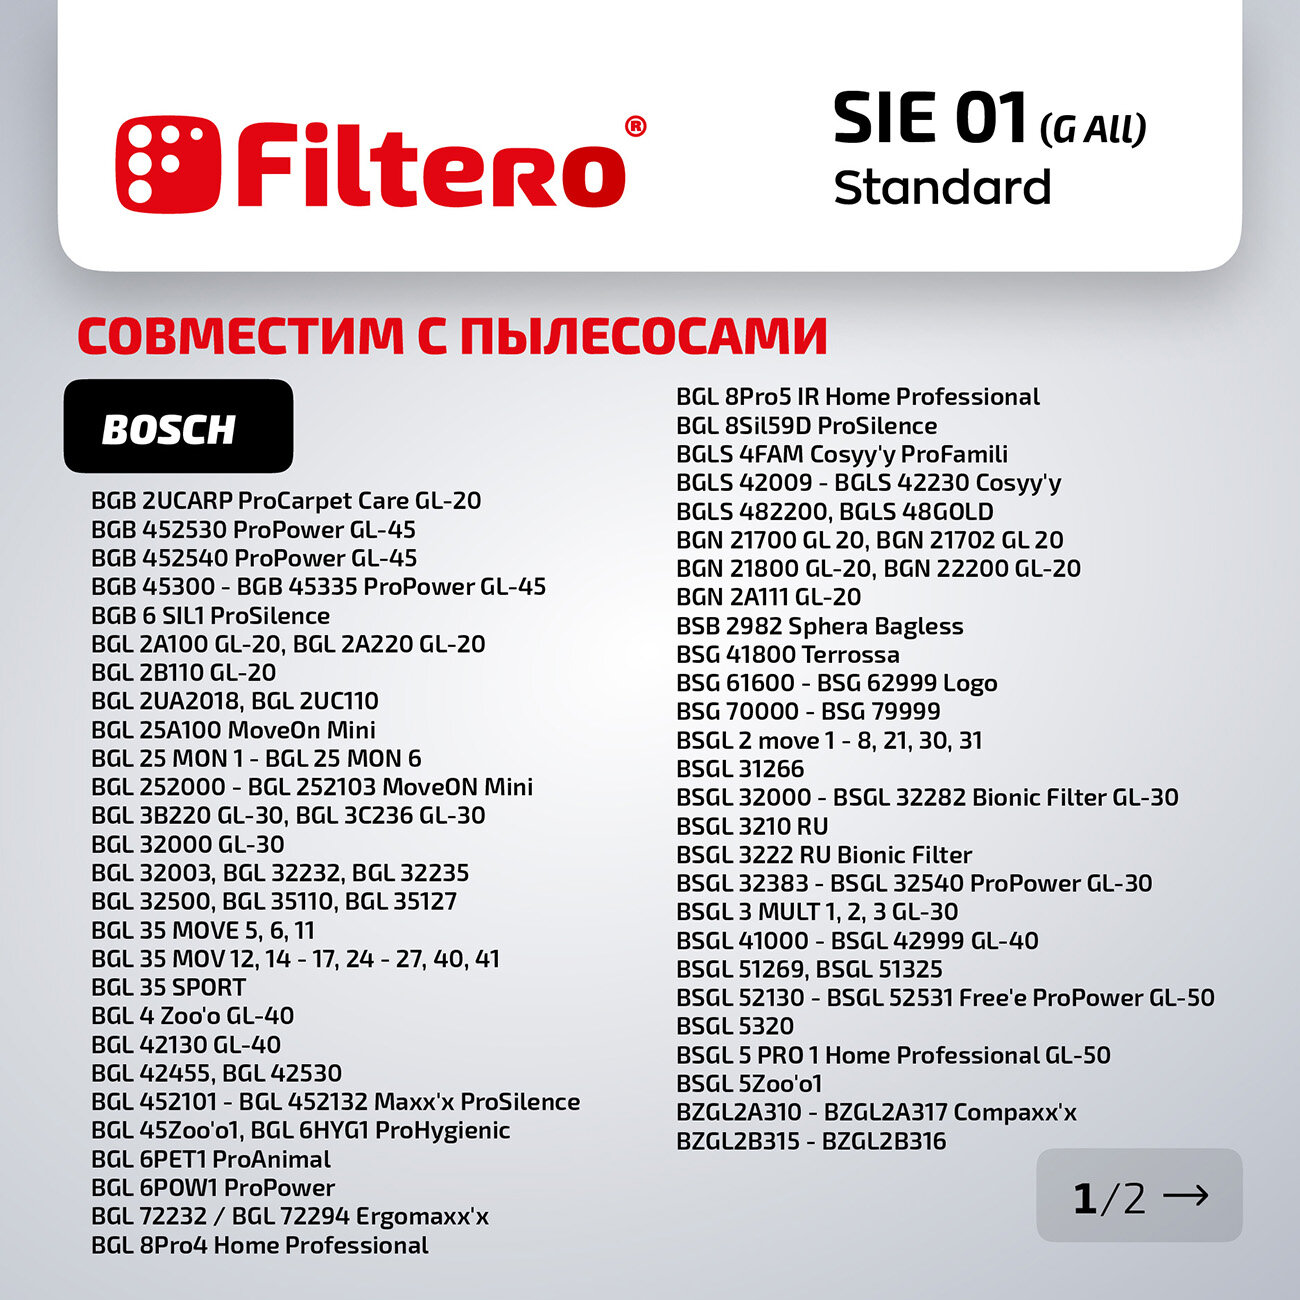 Мешки-пылесборники Filtero SIE 01 Standard, (тип "G ALL"), для пылесосов Bosch, Siemens , BBZ41FGALL, бумажные, 5 штук + фильтр.